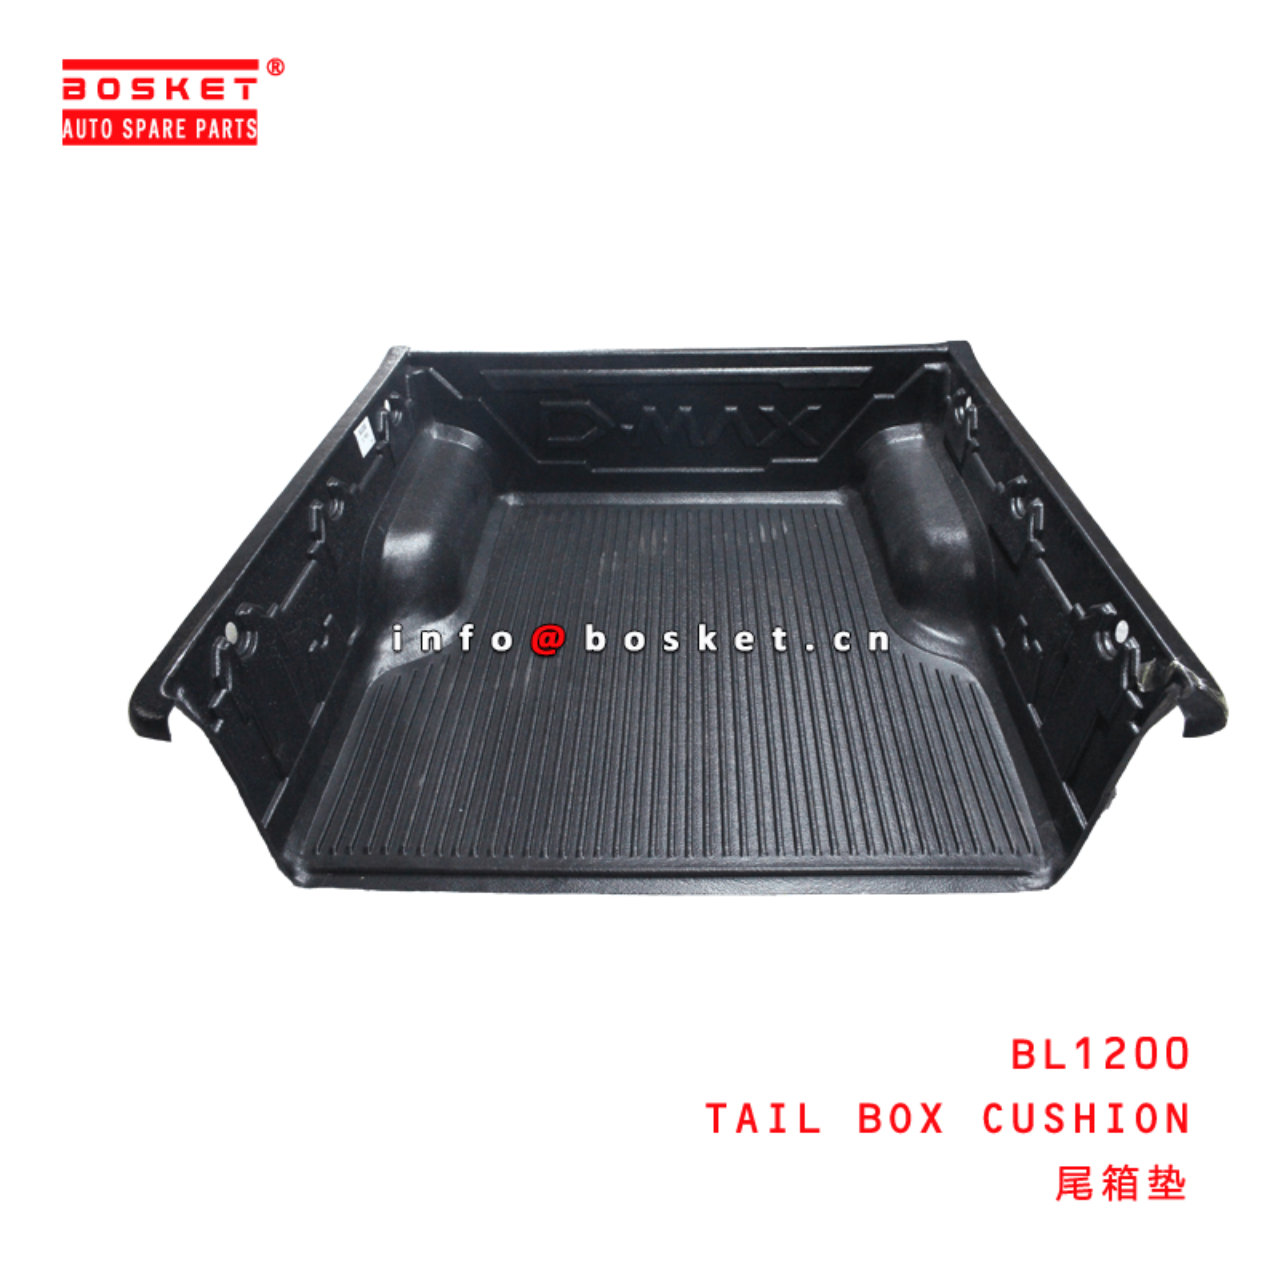  BL1200 Tail Box Cushion Suitable for ISUZU D-MAX 2017